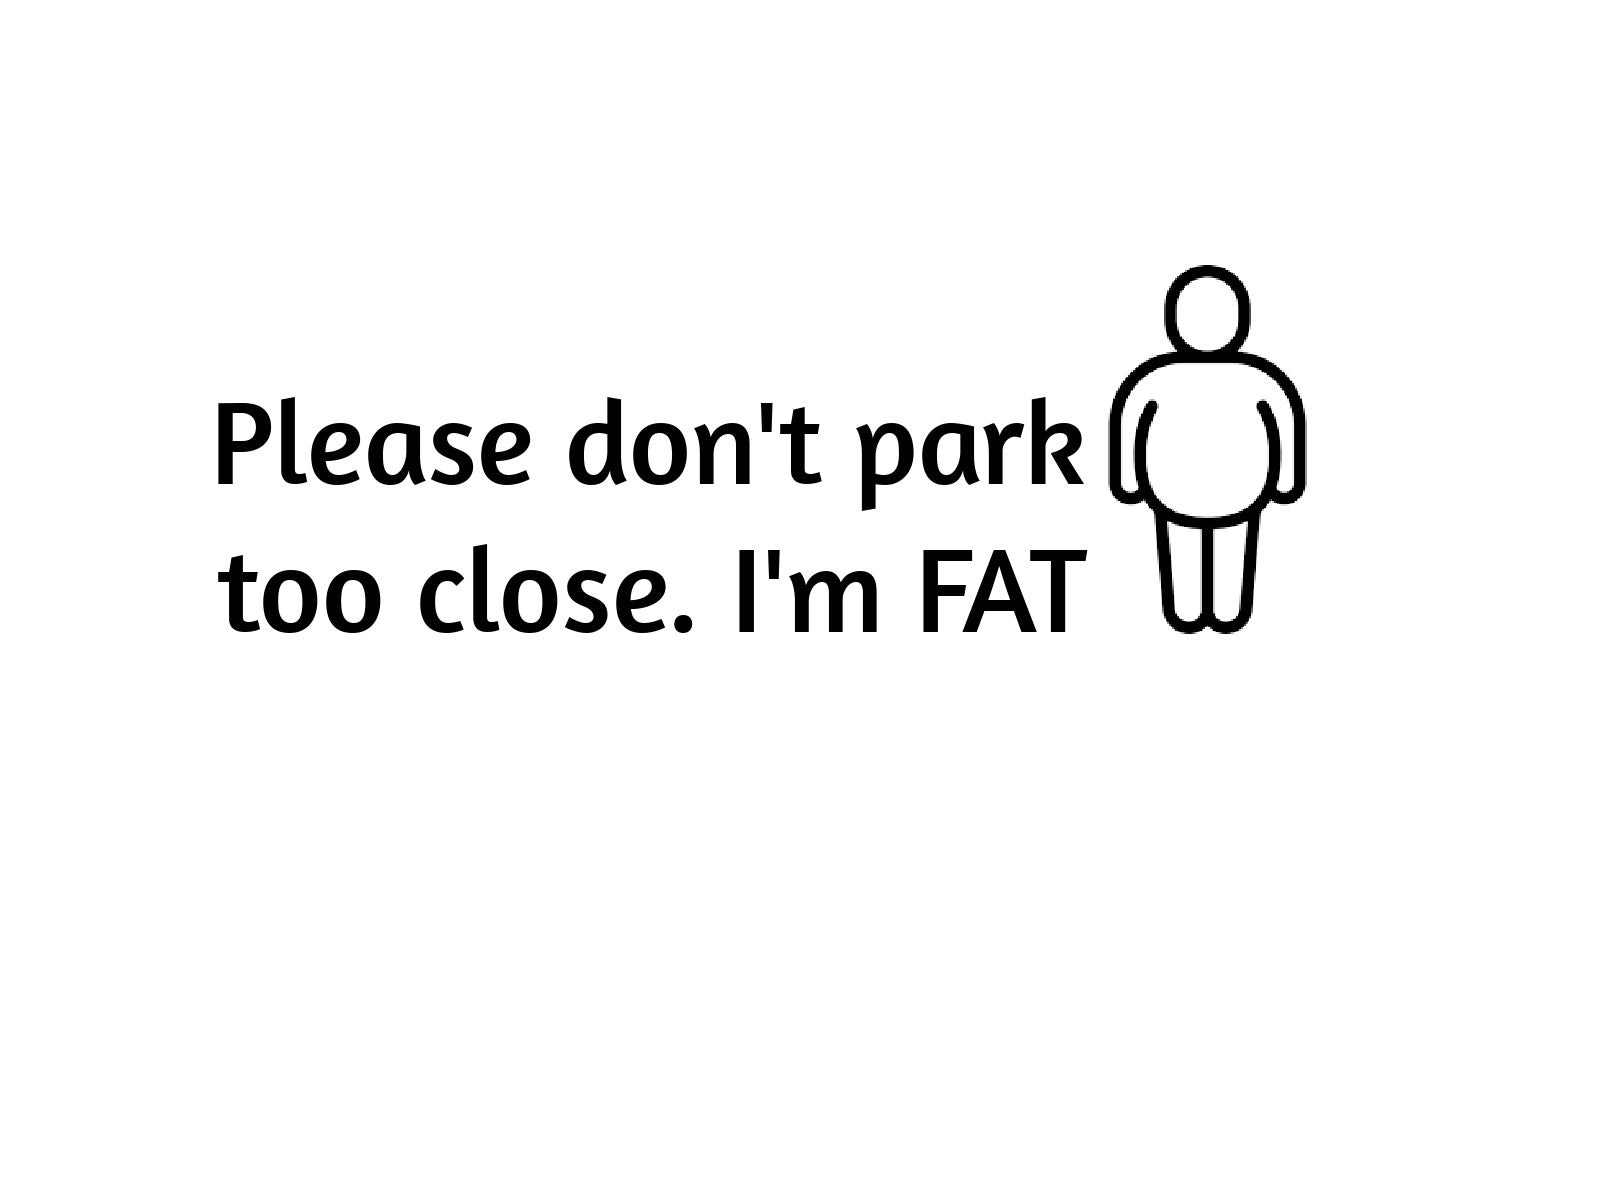 Please don't park too close. I'm FAT